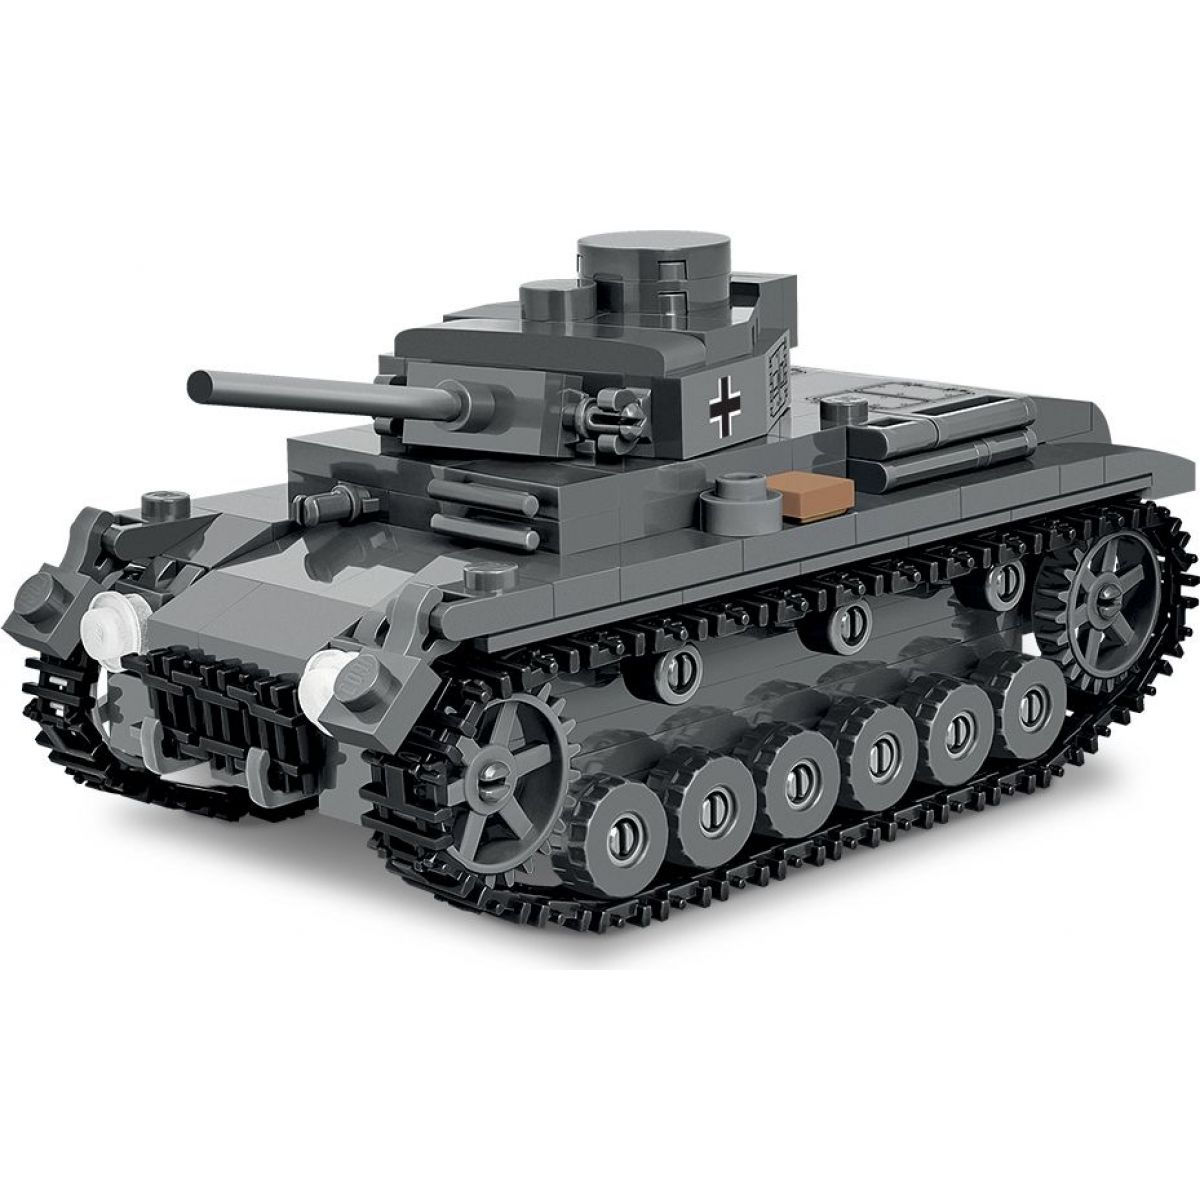 Cobi 3062 World of Tanks Pz. Kpfw. III Ausf. J 1:48